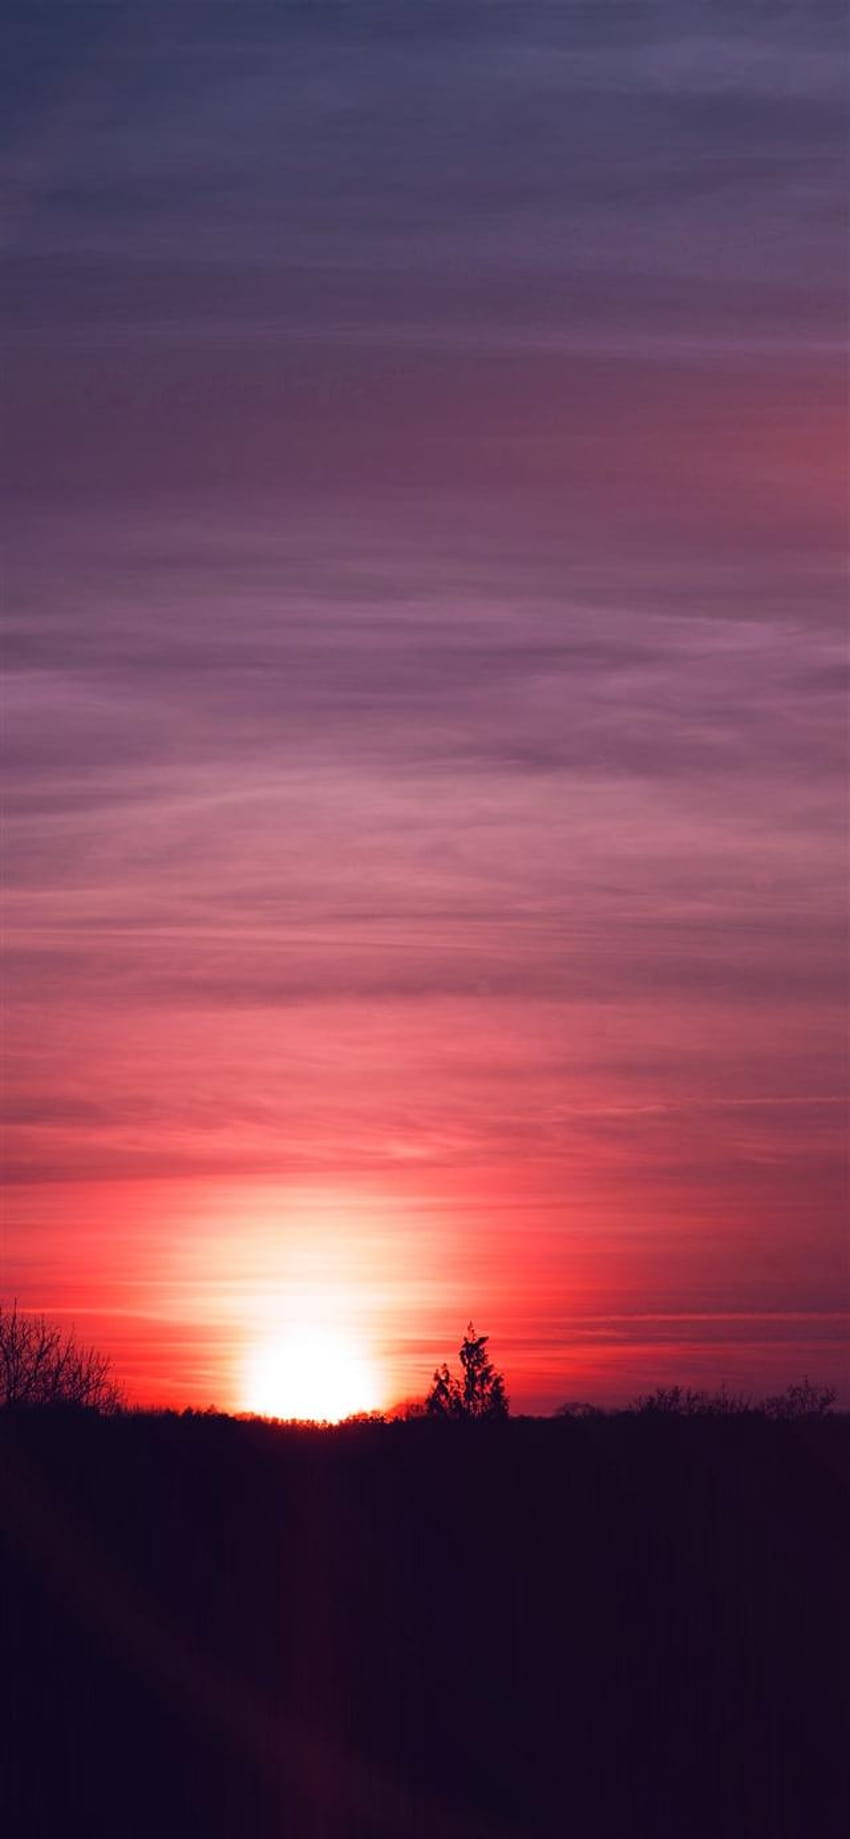 Sky sunset night summer cloud iPhone X, pink sunset evening HD phone wallpaper